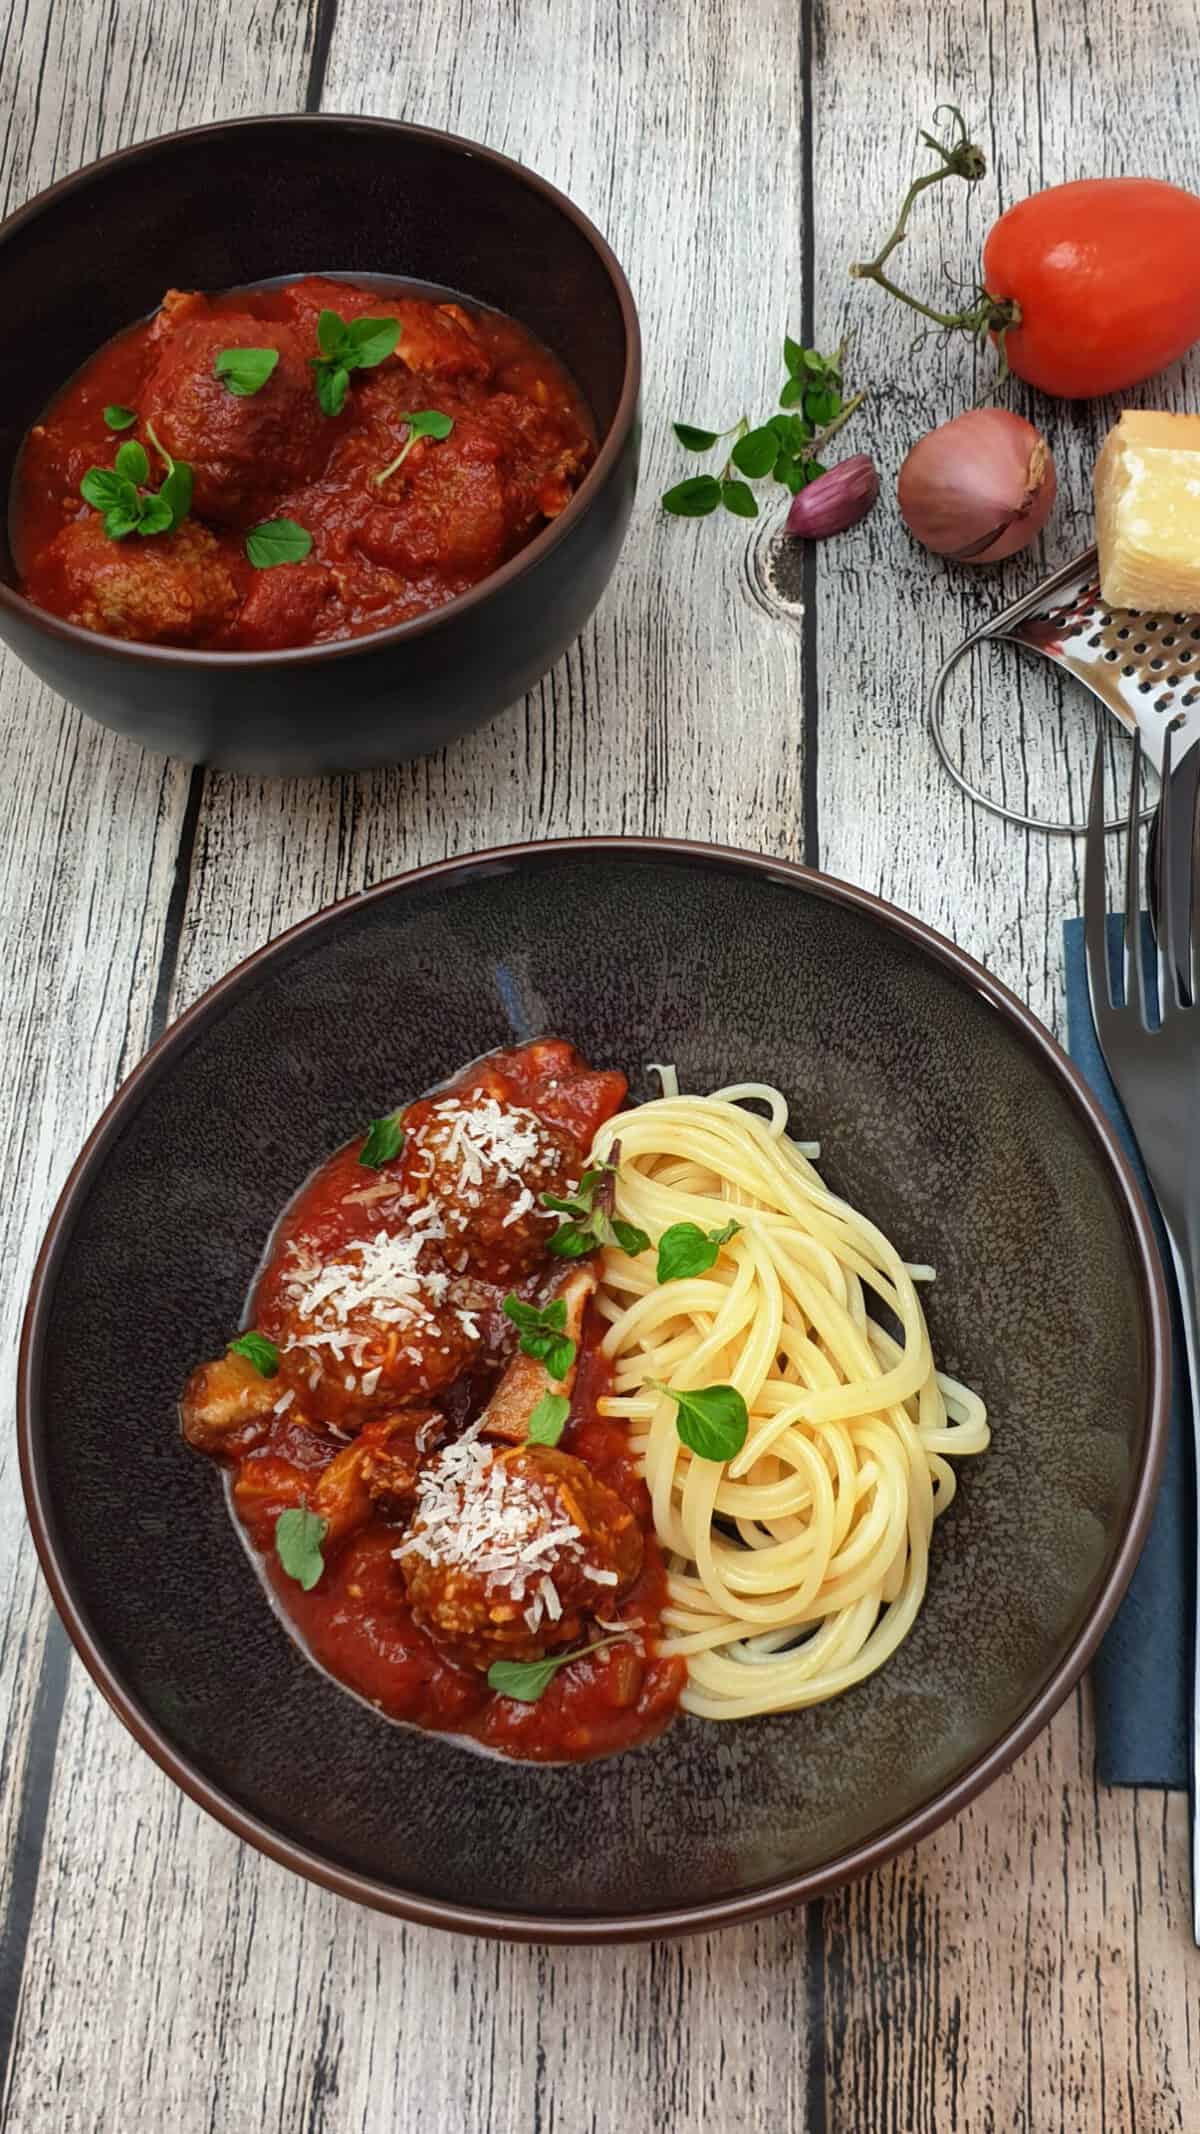 Italienische Hackbällchen mit Spaghetti in einer braunen Schale angerichtet. Mit Parmesan bestreut.